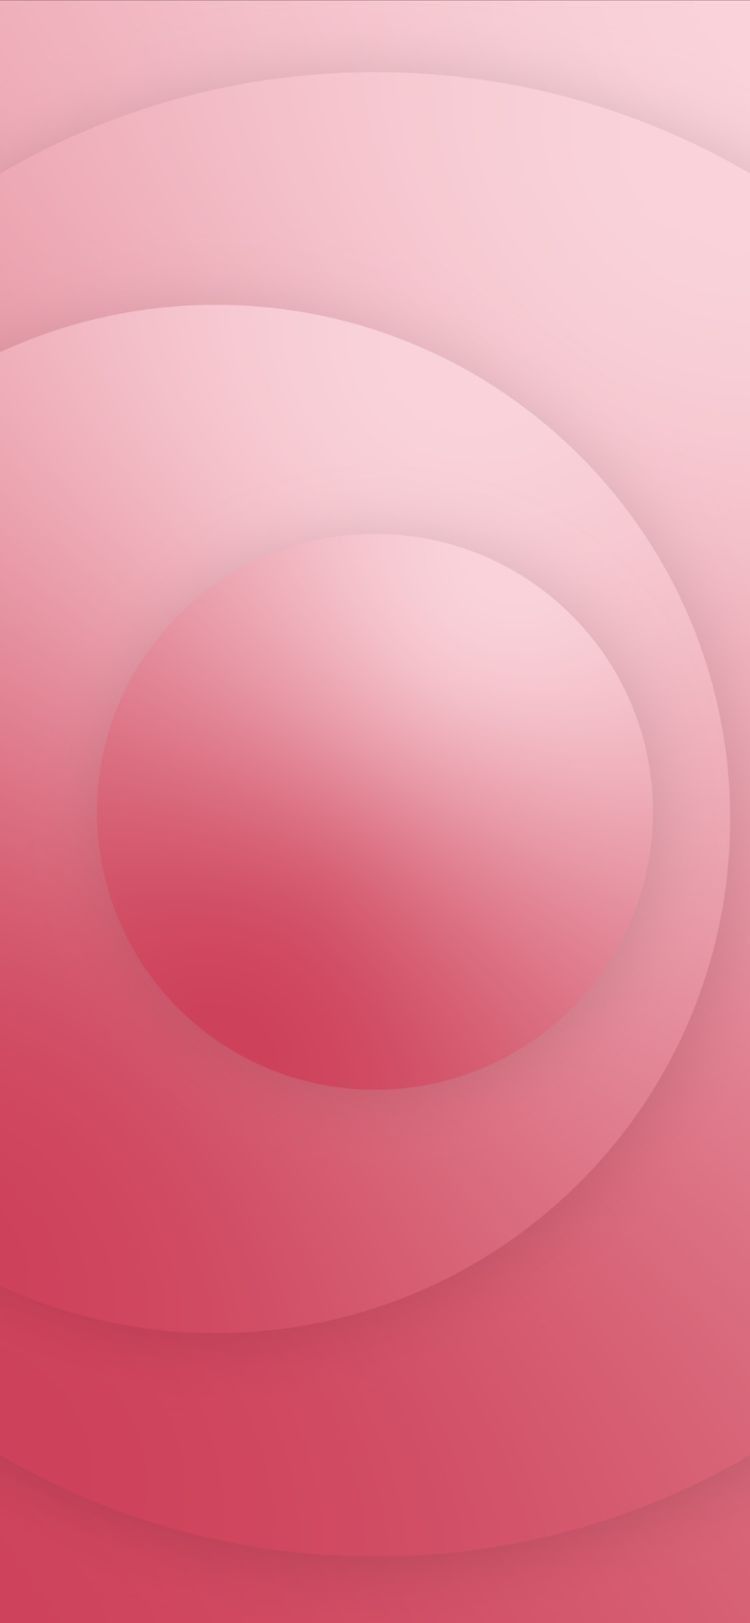 Hình nền iphone hồng trắng: Với hình nền ios 14 hồng trắng, chiếc iPhone của bạn sẽ trở nên đáng yêu và dễ thương hơn bao giờ hết. Xem qua bộ sưu tập hình ảnh này để chọn lựa một tấm nền phù hợp với phong cách của bạn. 